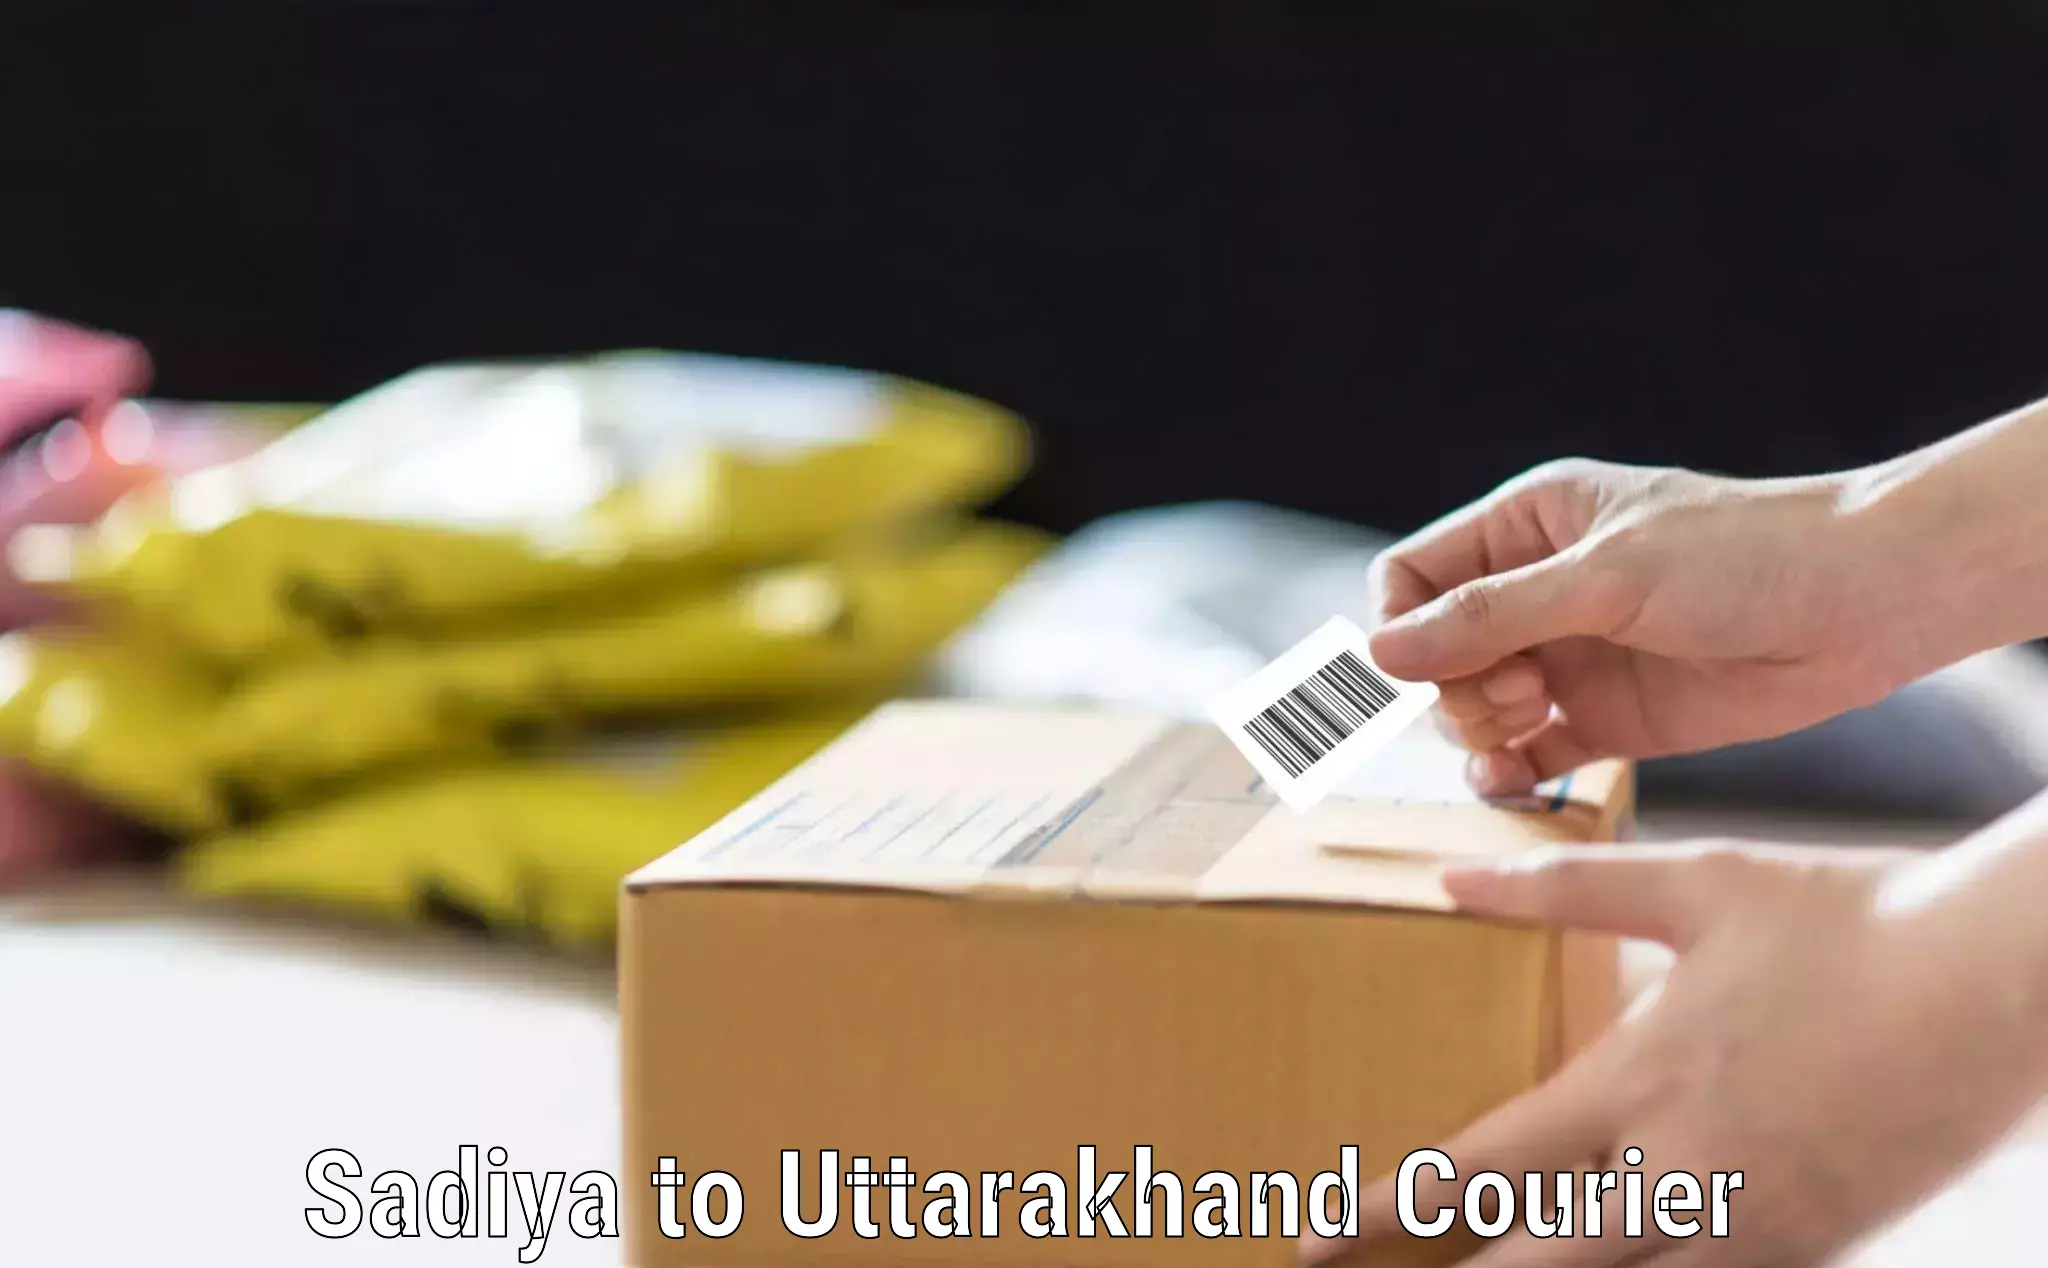 Flexible luggage courier service Sadiya to Uttarakhand